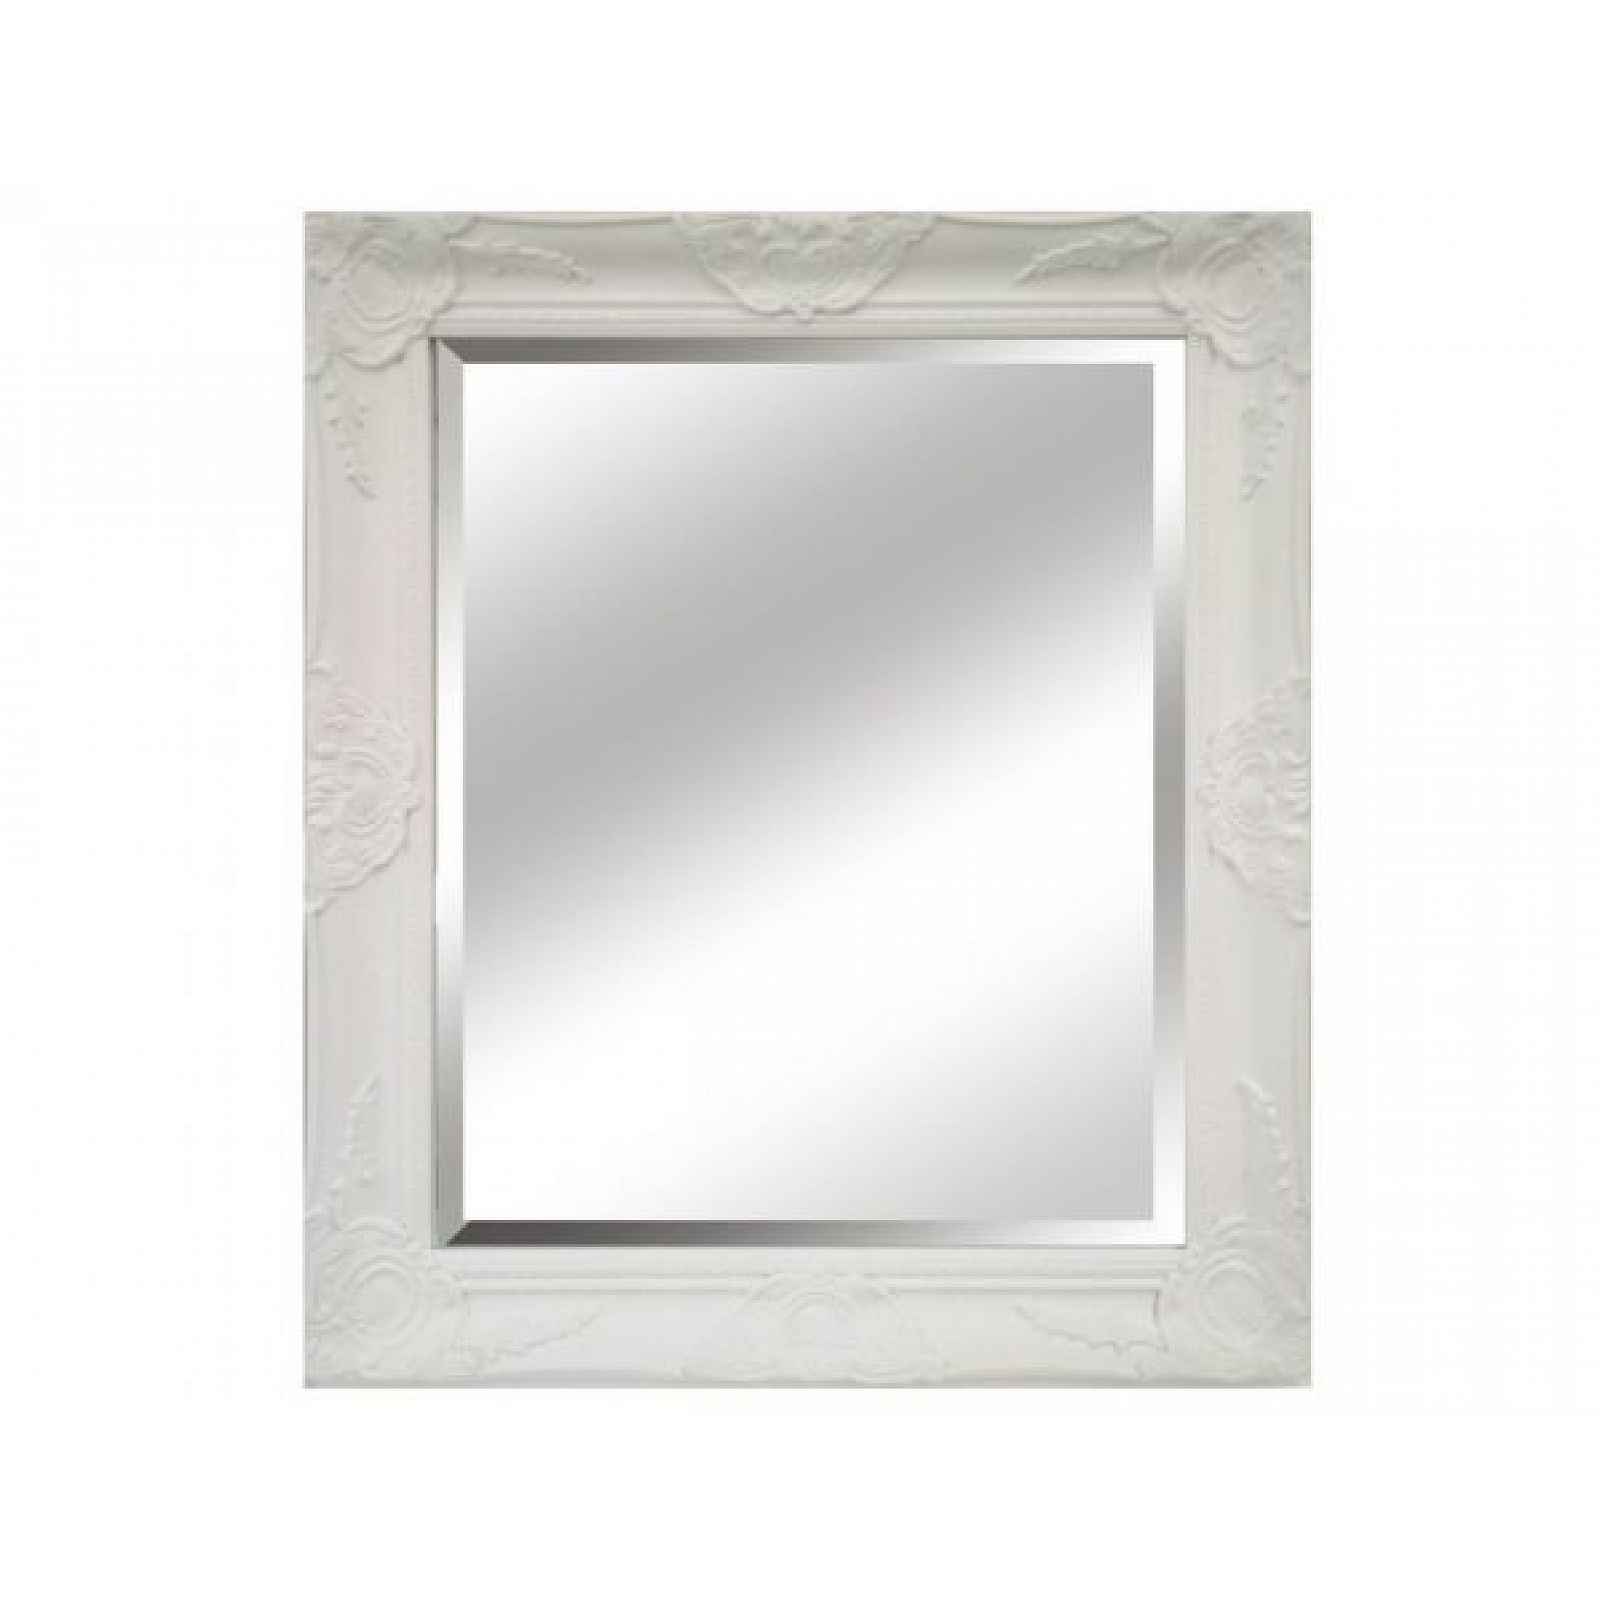 Bílé zrcadlo, dřevěný rám, MALKIA TYP 13